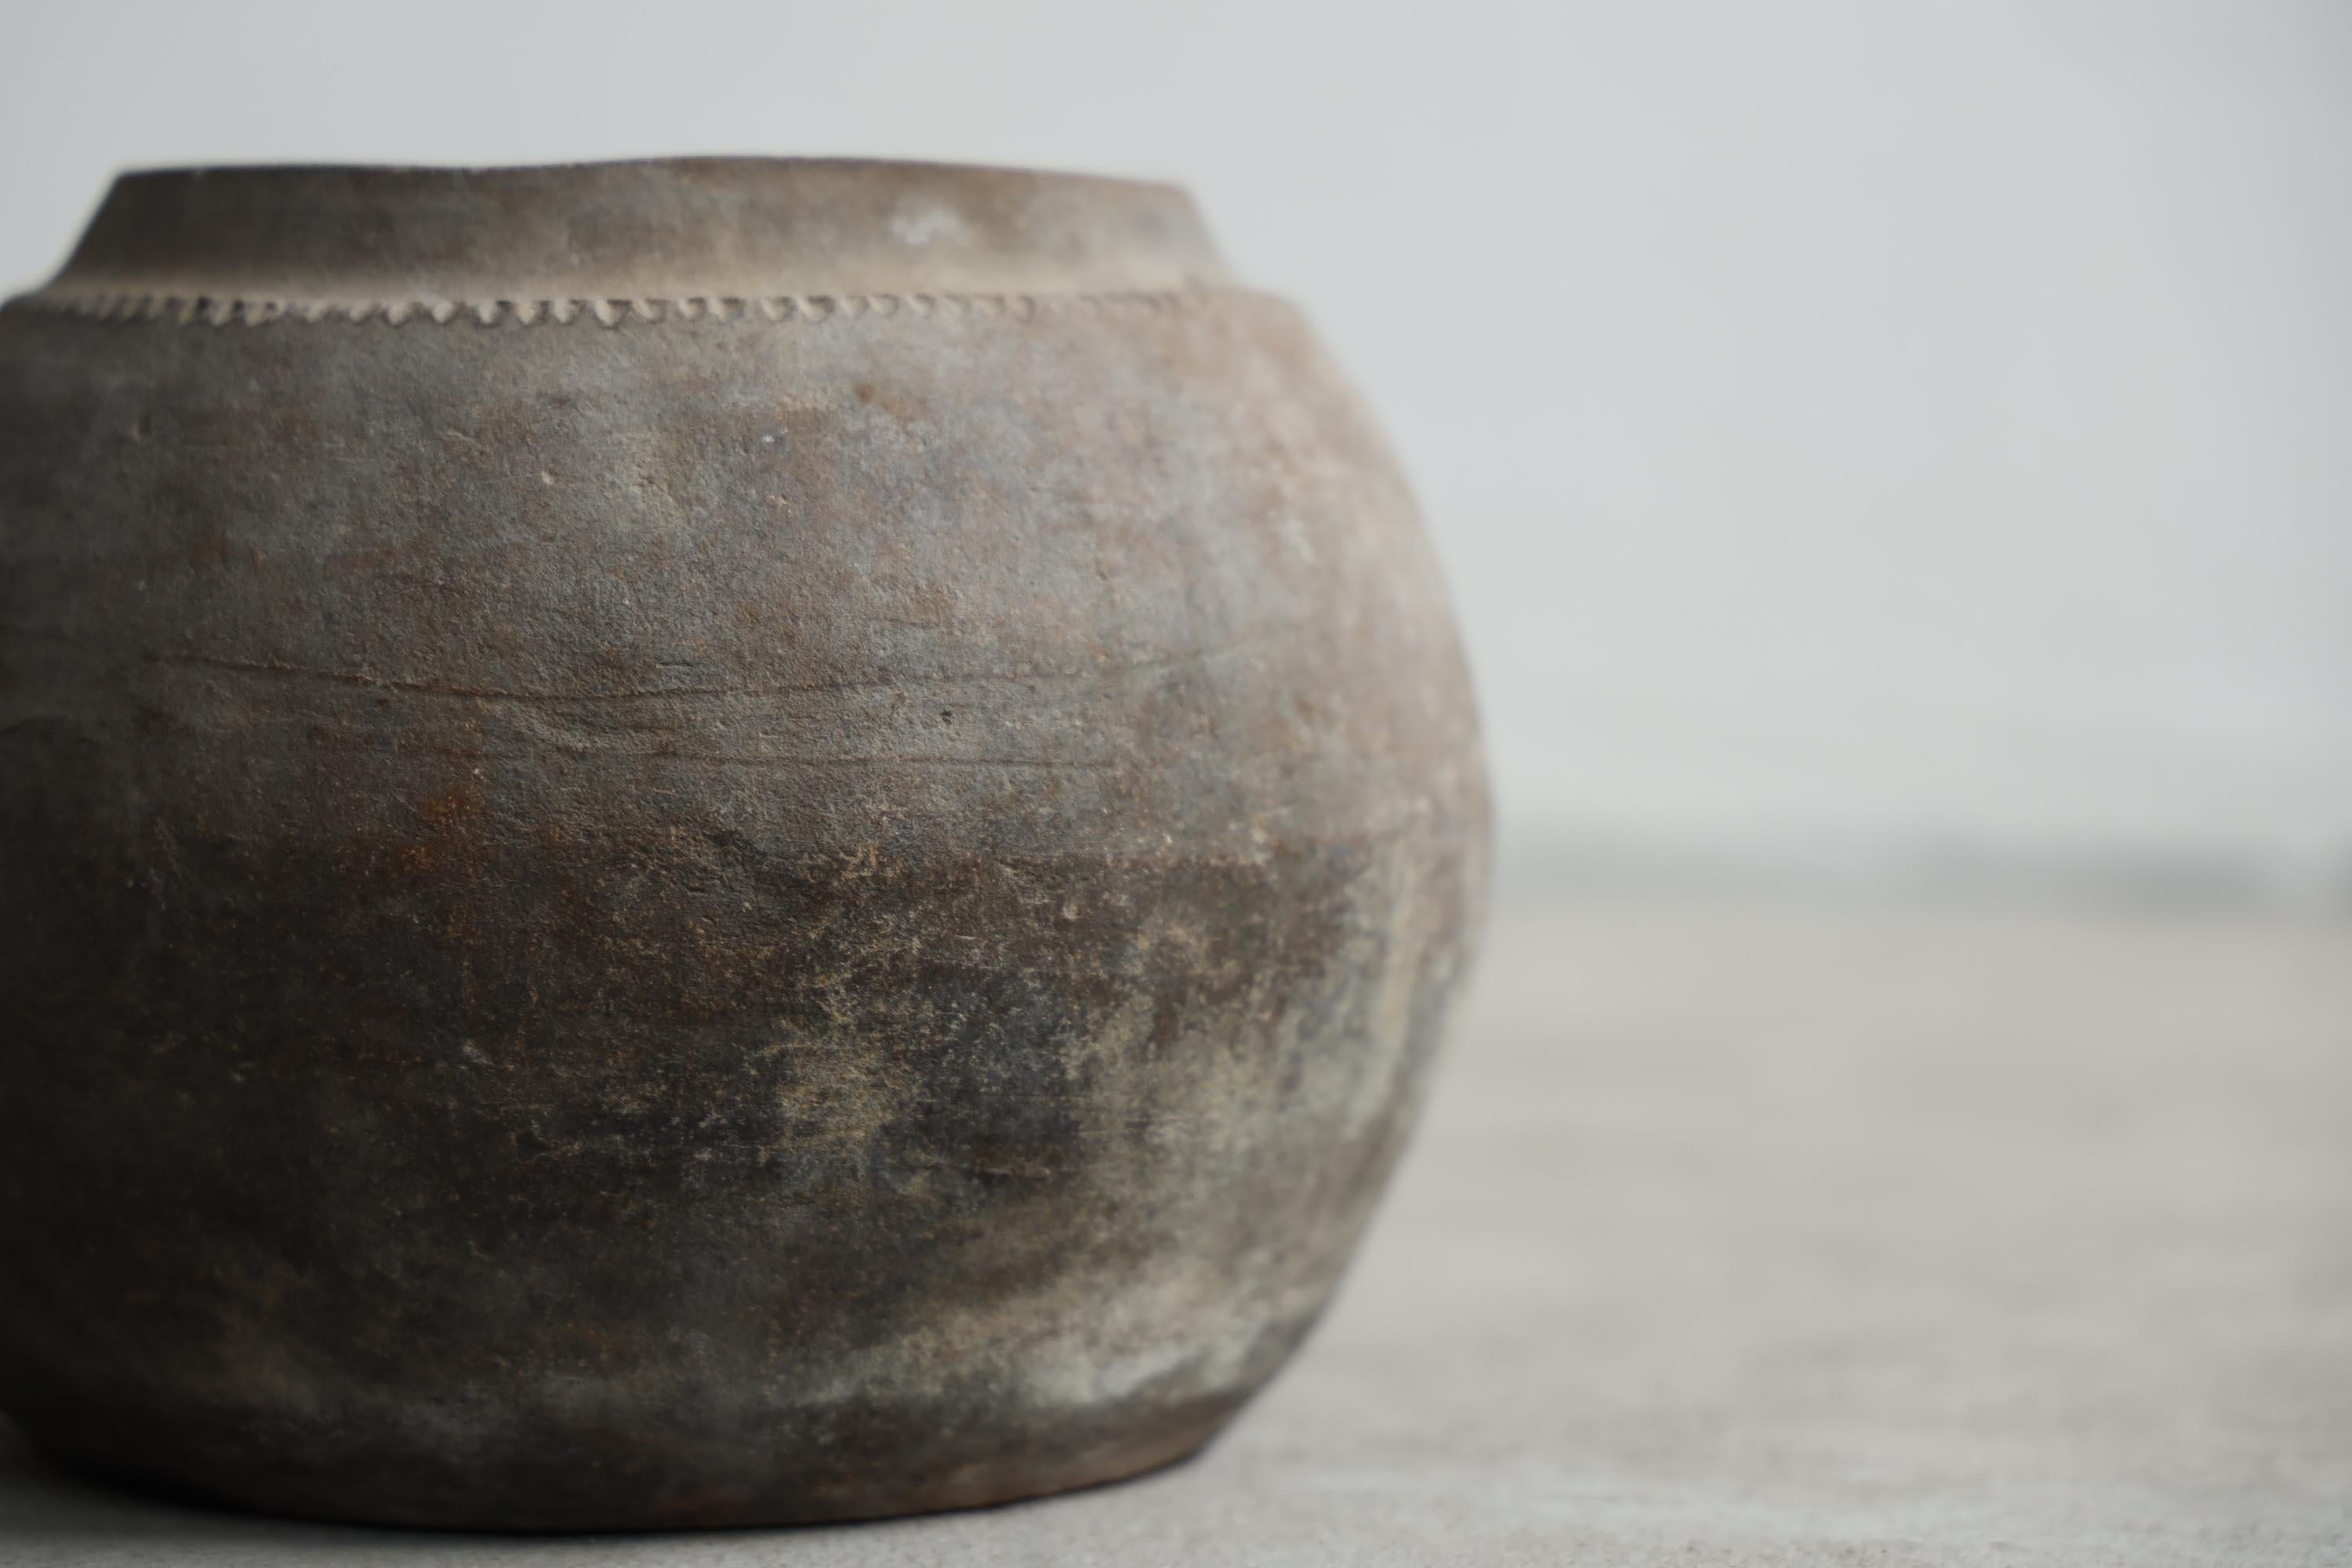 C'est une ancienne poterie japonaise.
Il date de la période Meiji (années 1860-1900).
Il était utilisé comme un pot d'extinction d'incendie.

Cette pièce a une couleur et une texture magnifiques.
C'est très rare.